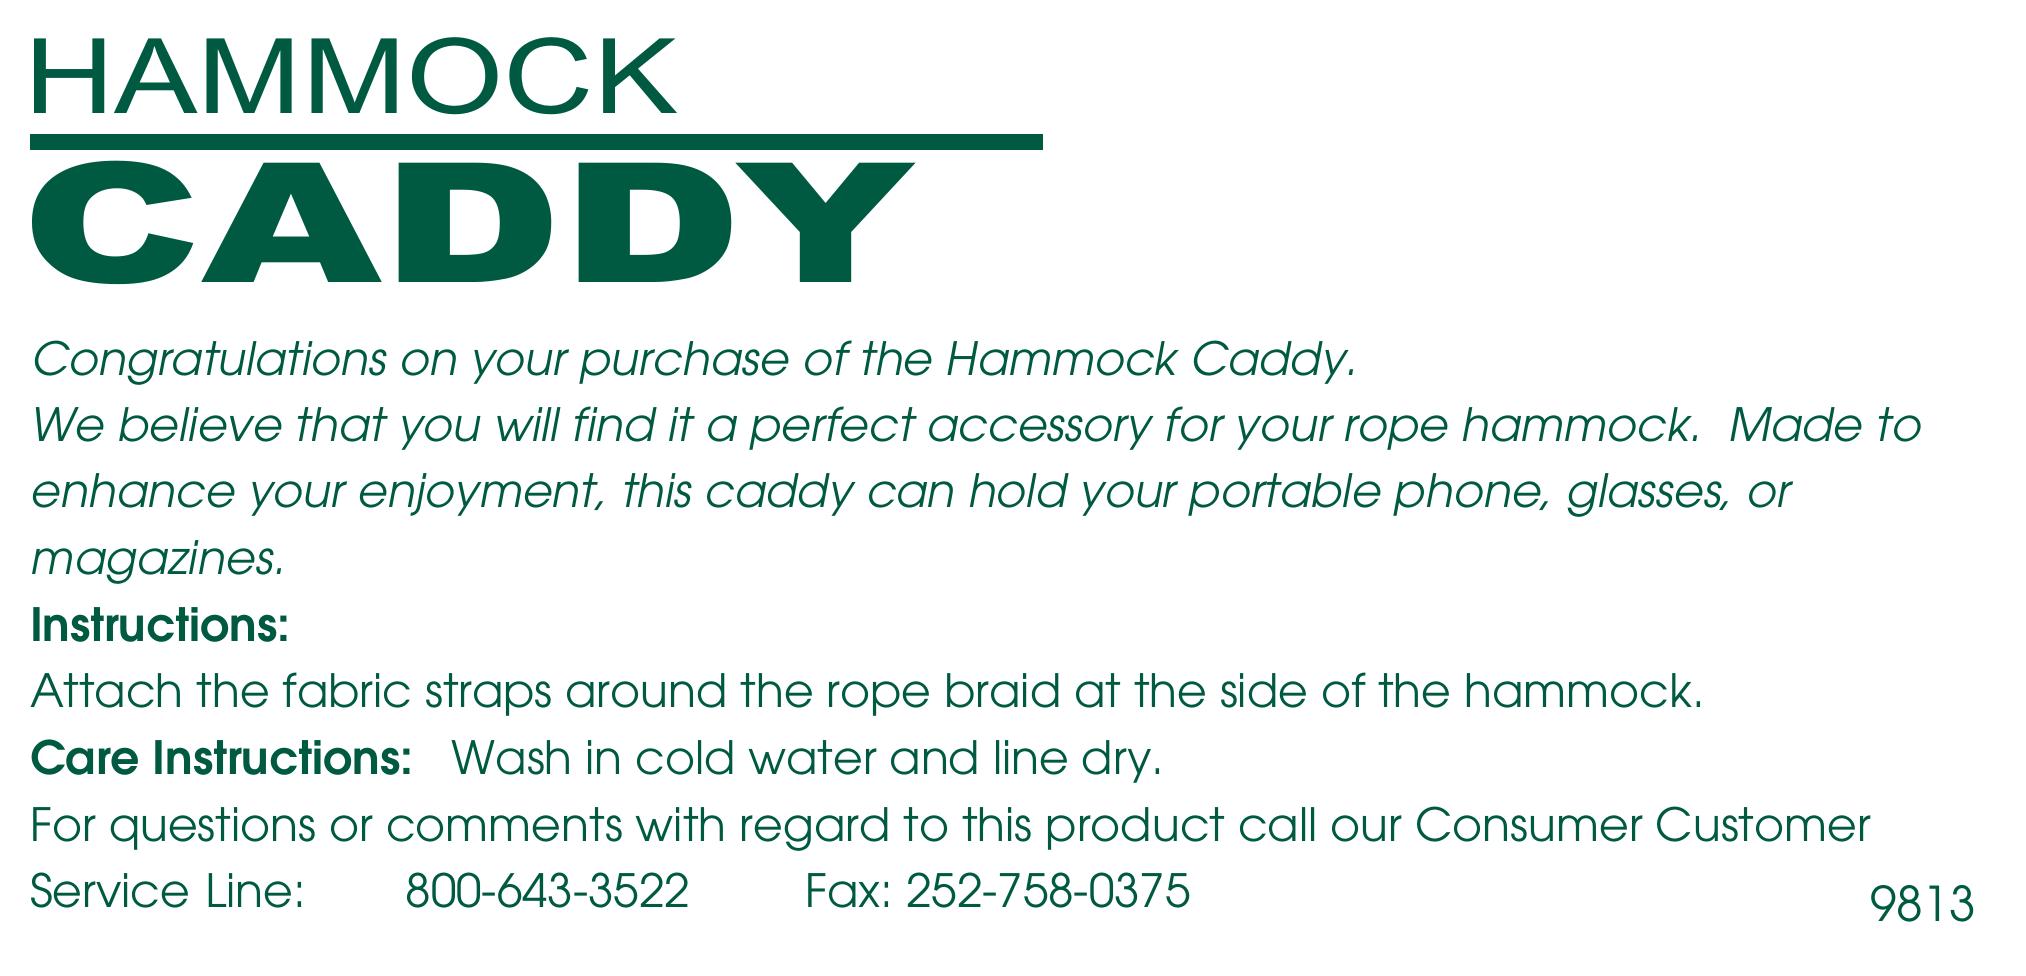 Hatteras Hammocks Hammock Caddy Swing Sets User Manual